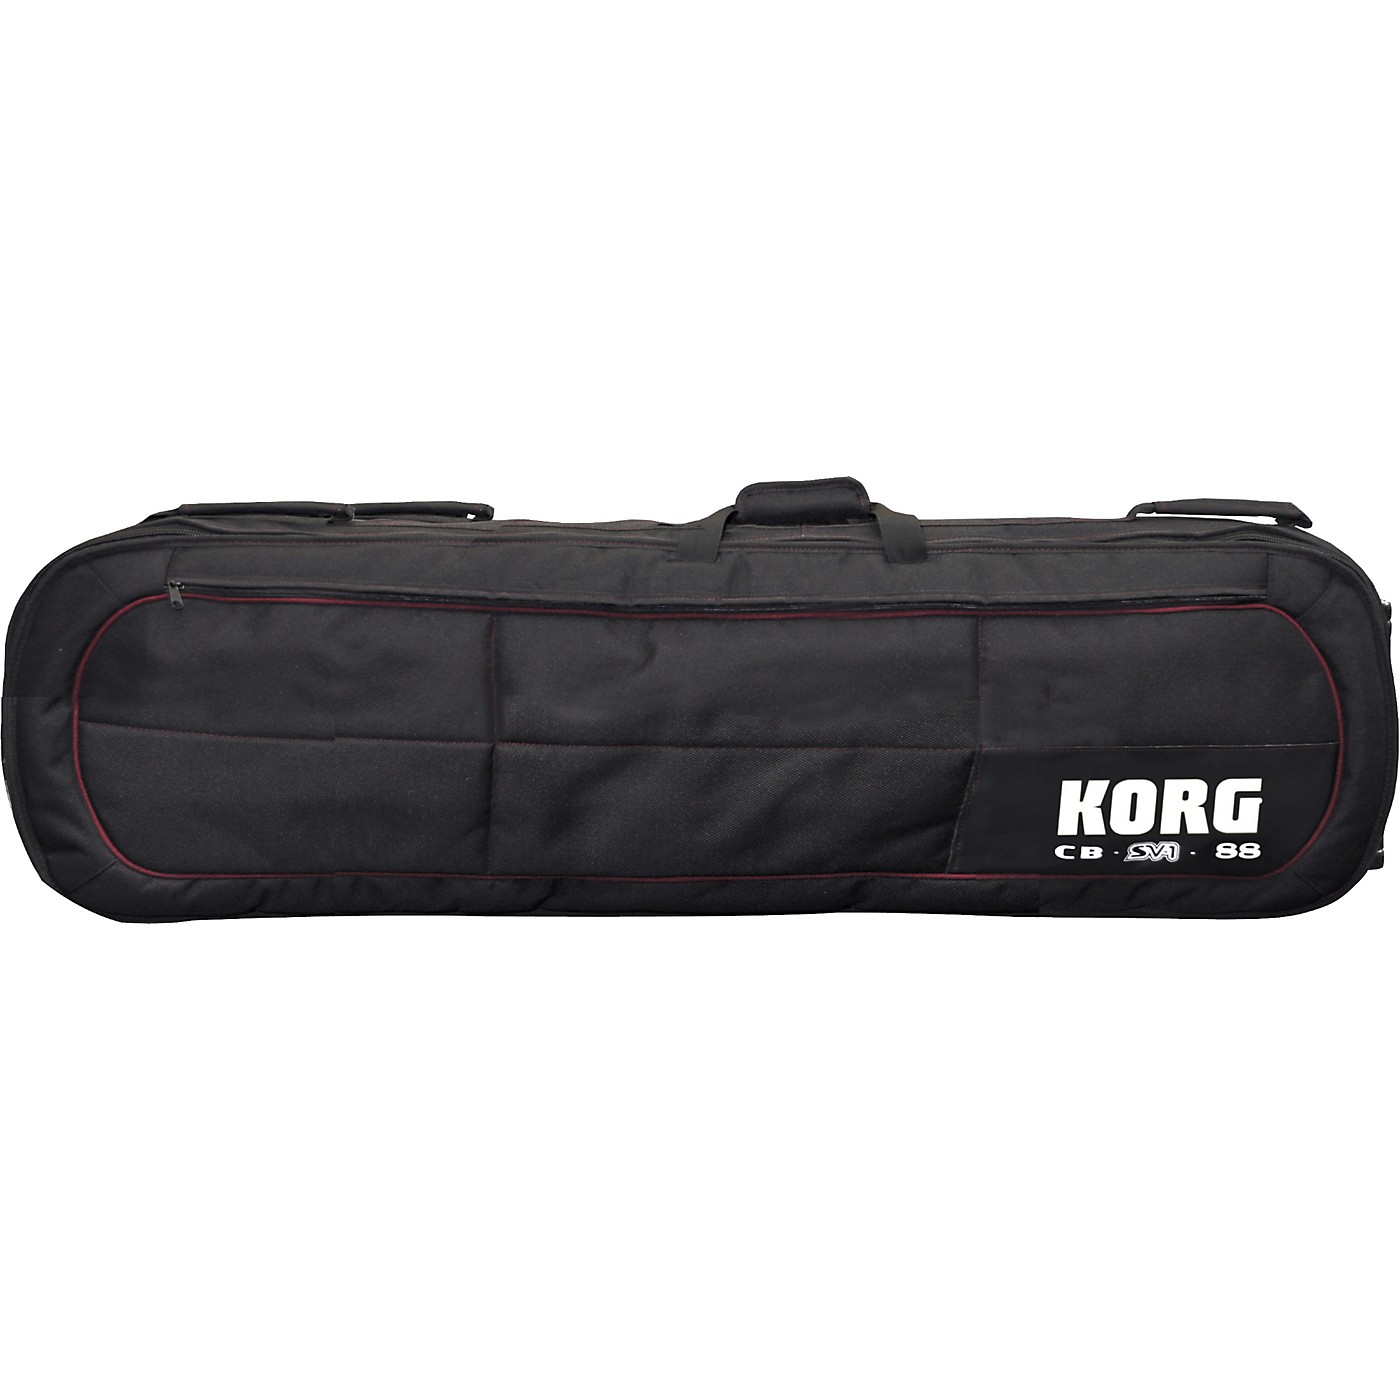 KORG Carry/Rolling Bag For SV-1 88 thumbnail